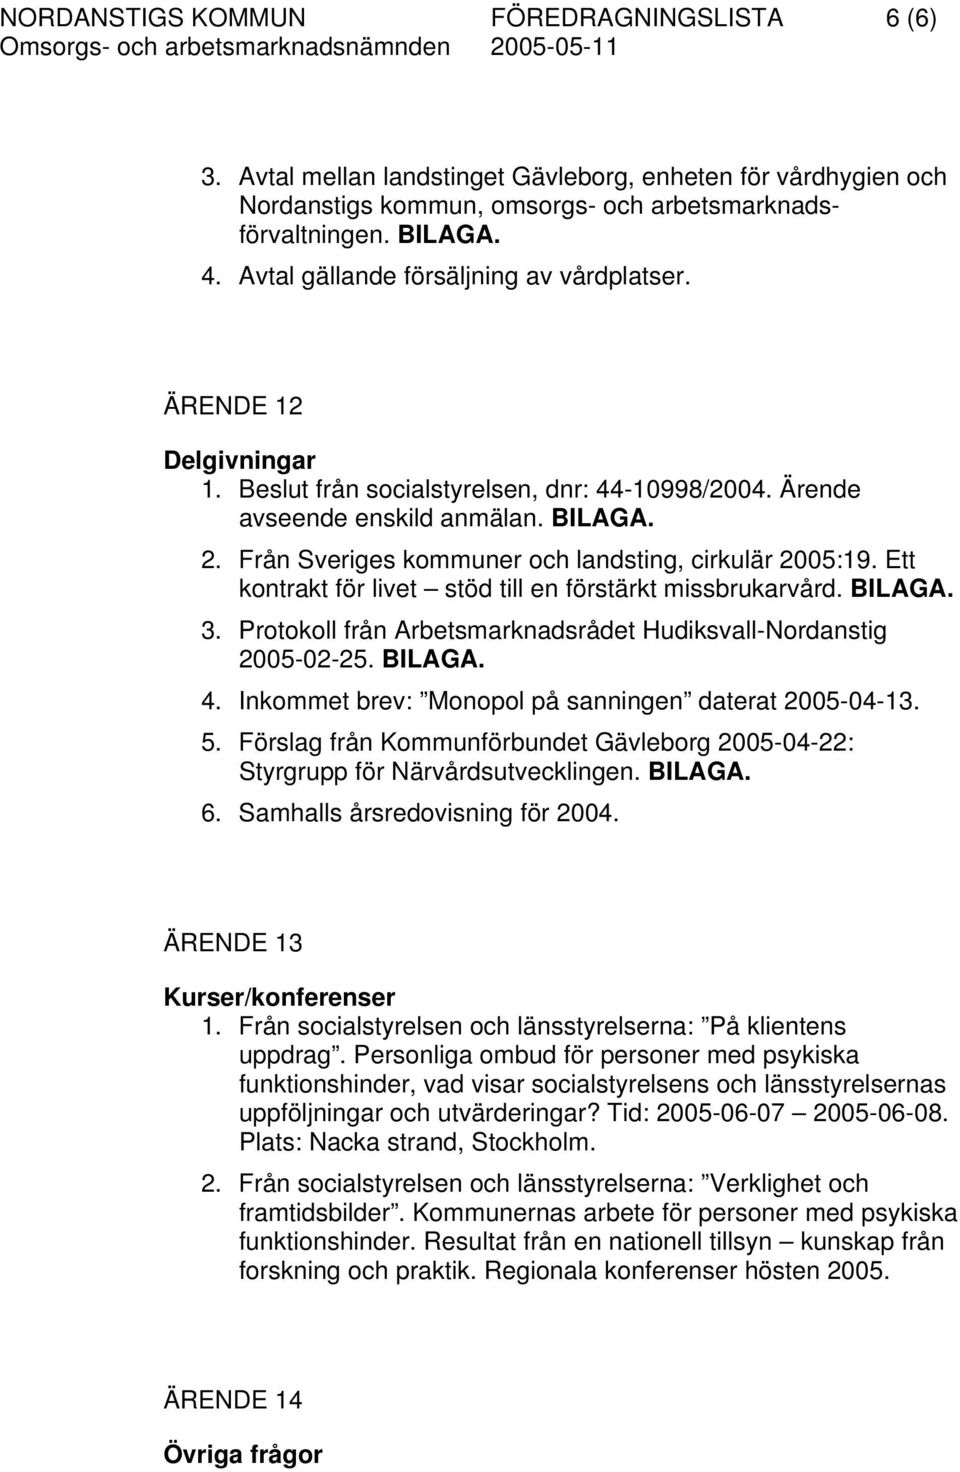 Från Sveriges kommuner och landsting, cirkulär 2005:19. Ett kontrakt för livet stöd till en förstärkt missbrukarvård. BILAGA. 3. Protokoll från Arbetsmarknadsrådet Hudiksvall-Nordanstig 2005-02-25.